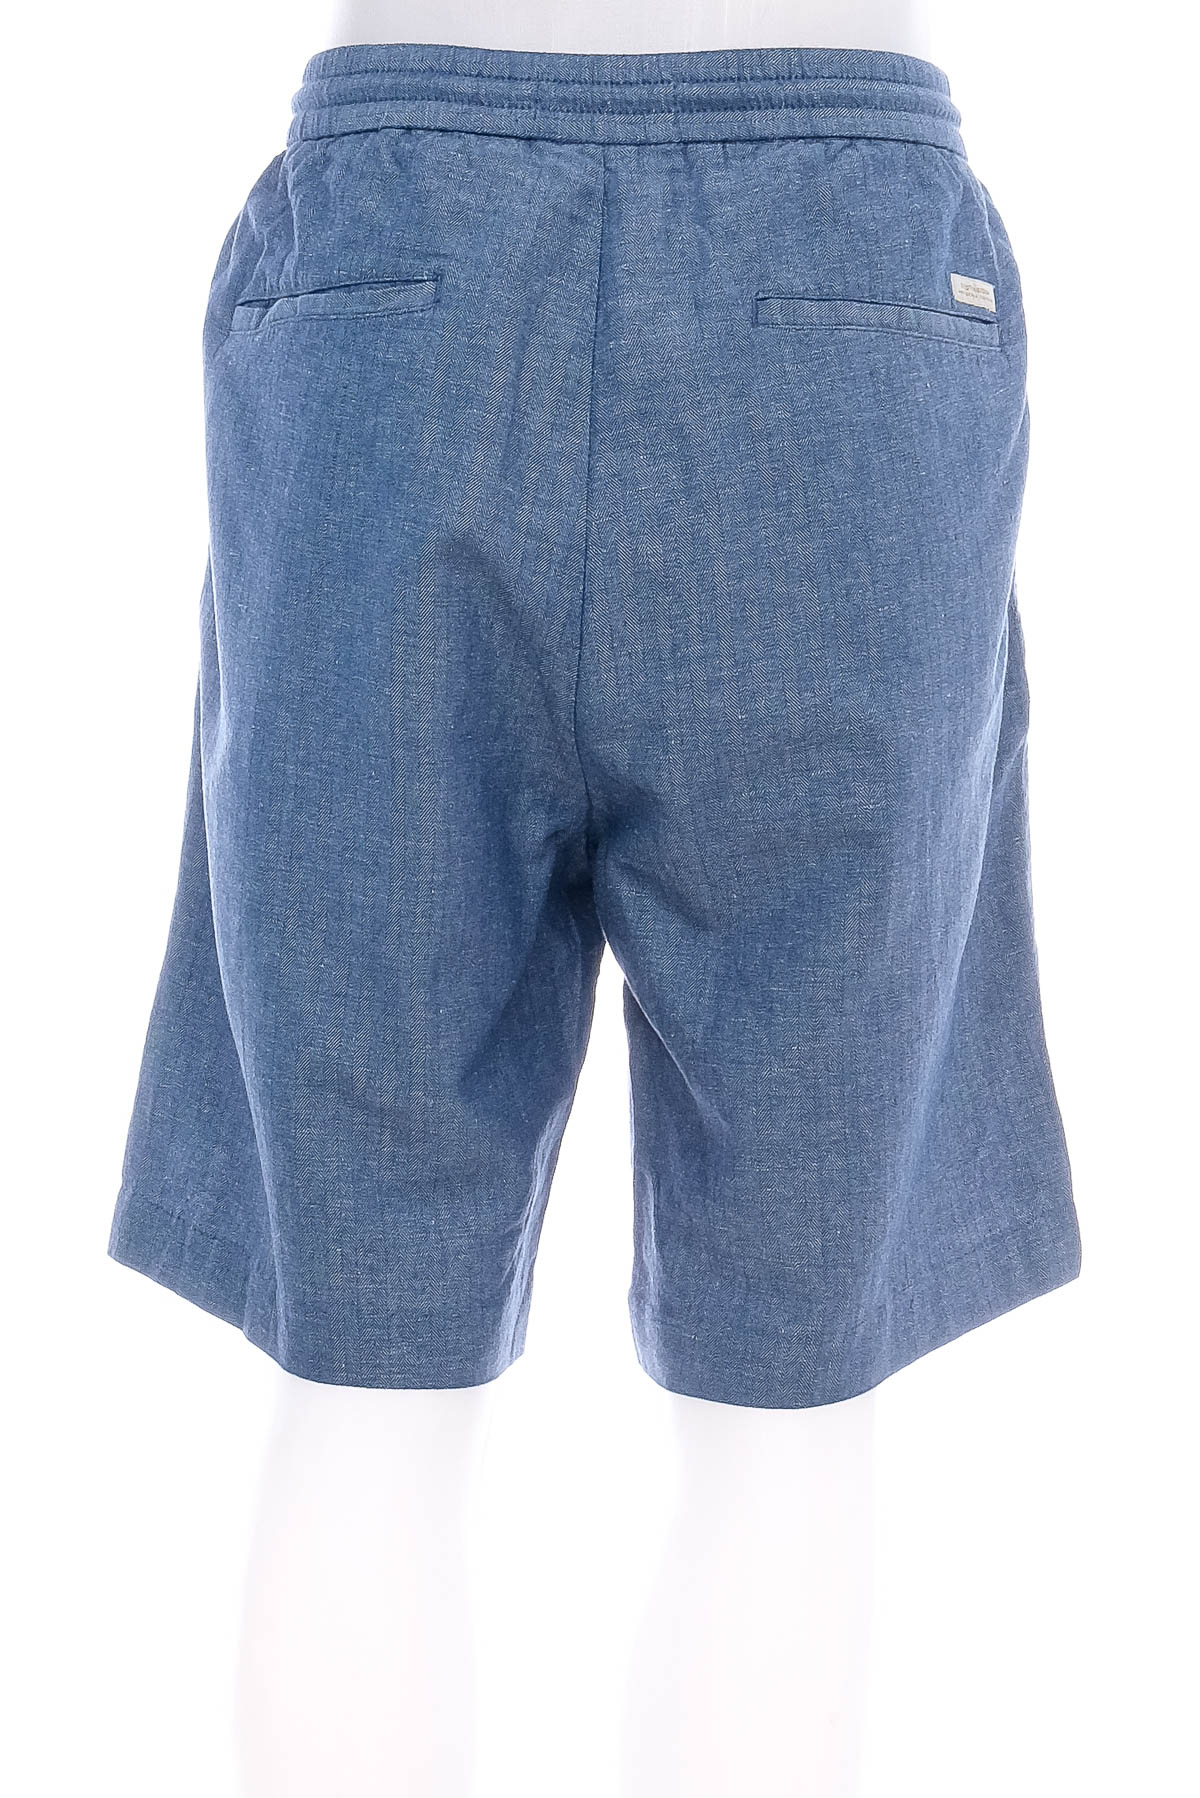 Pantaloni scurți bărbați - SCOTCH & SODA - 1